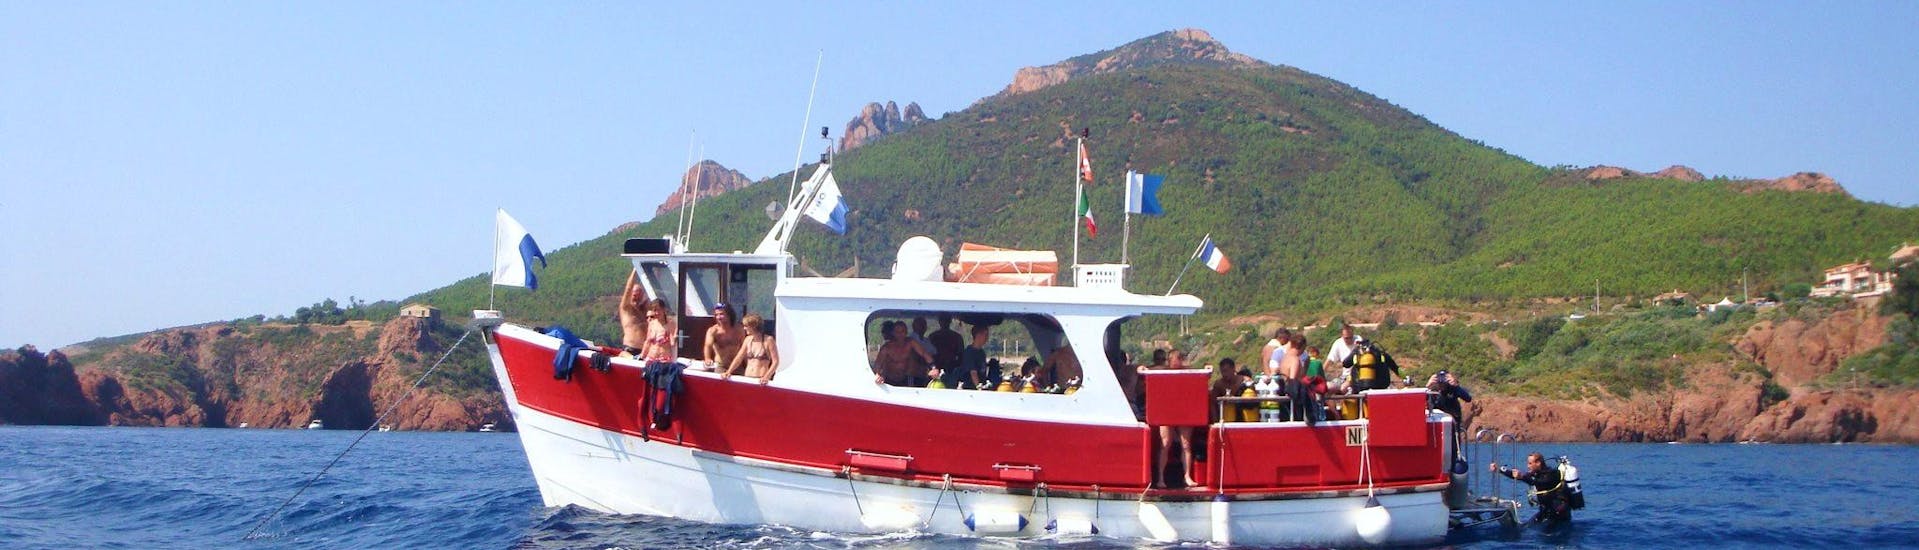 Blick auf das Boot des Dive Center La Rague vor dem Estérel-Massiv, das für den Schnorchelnachmittag bei Cannes genutzt wird.